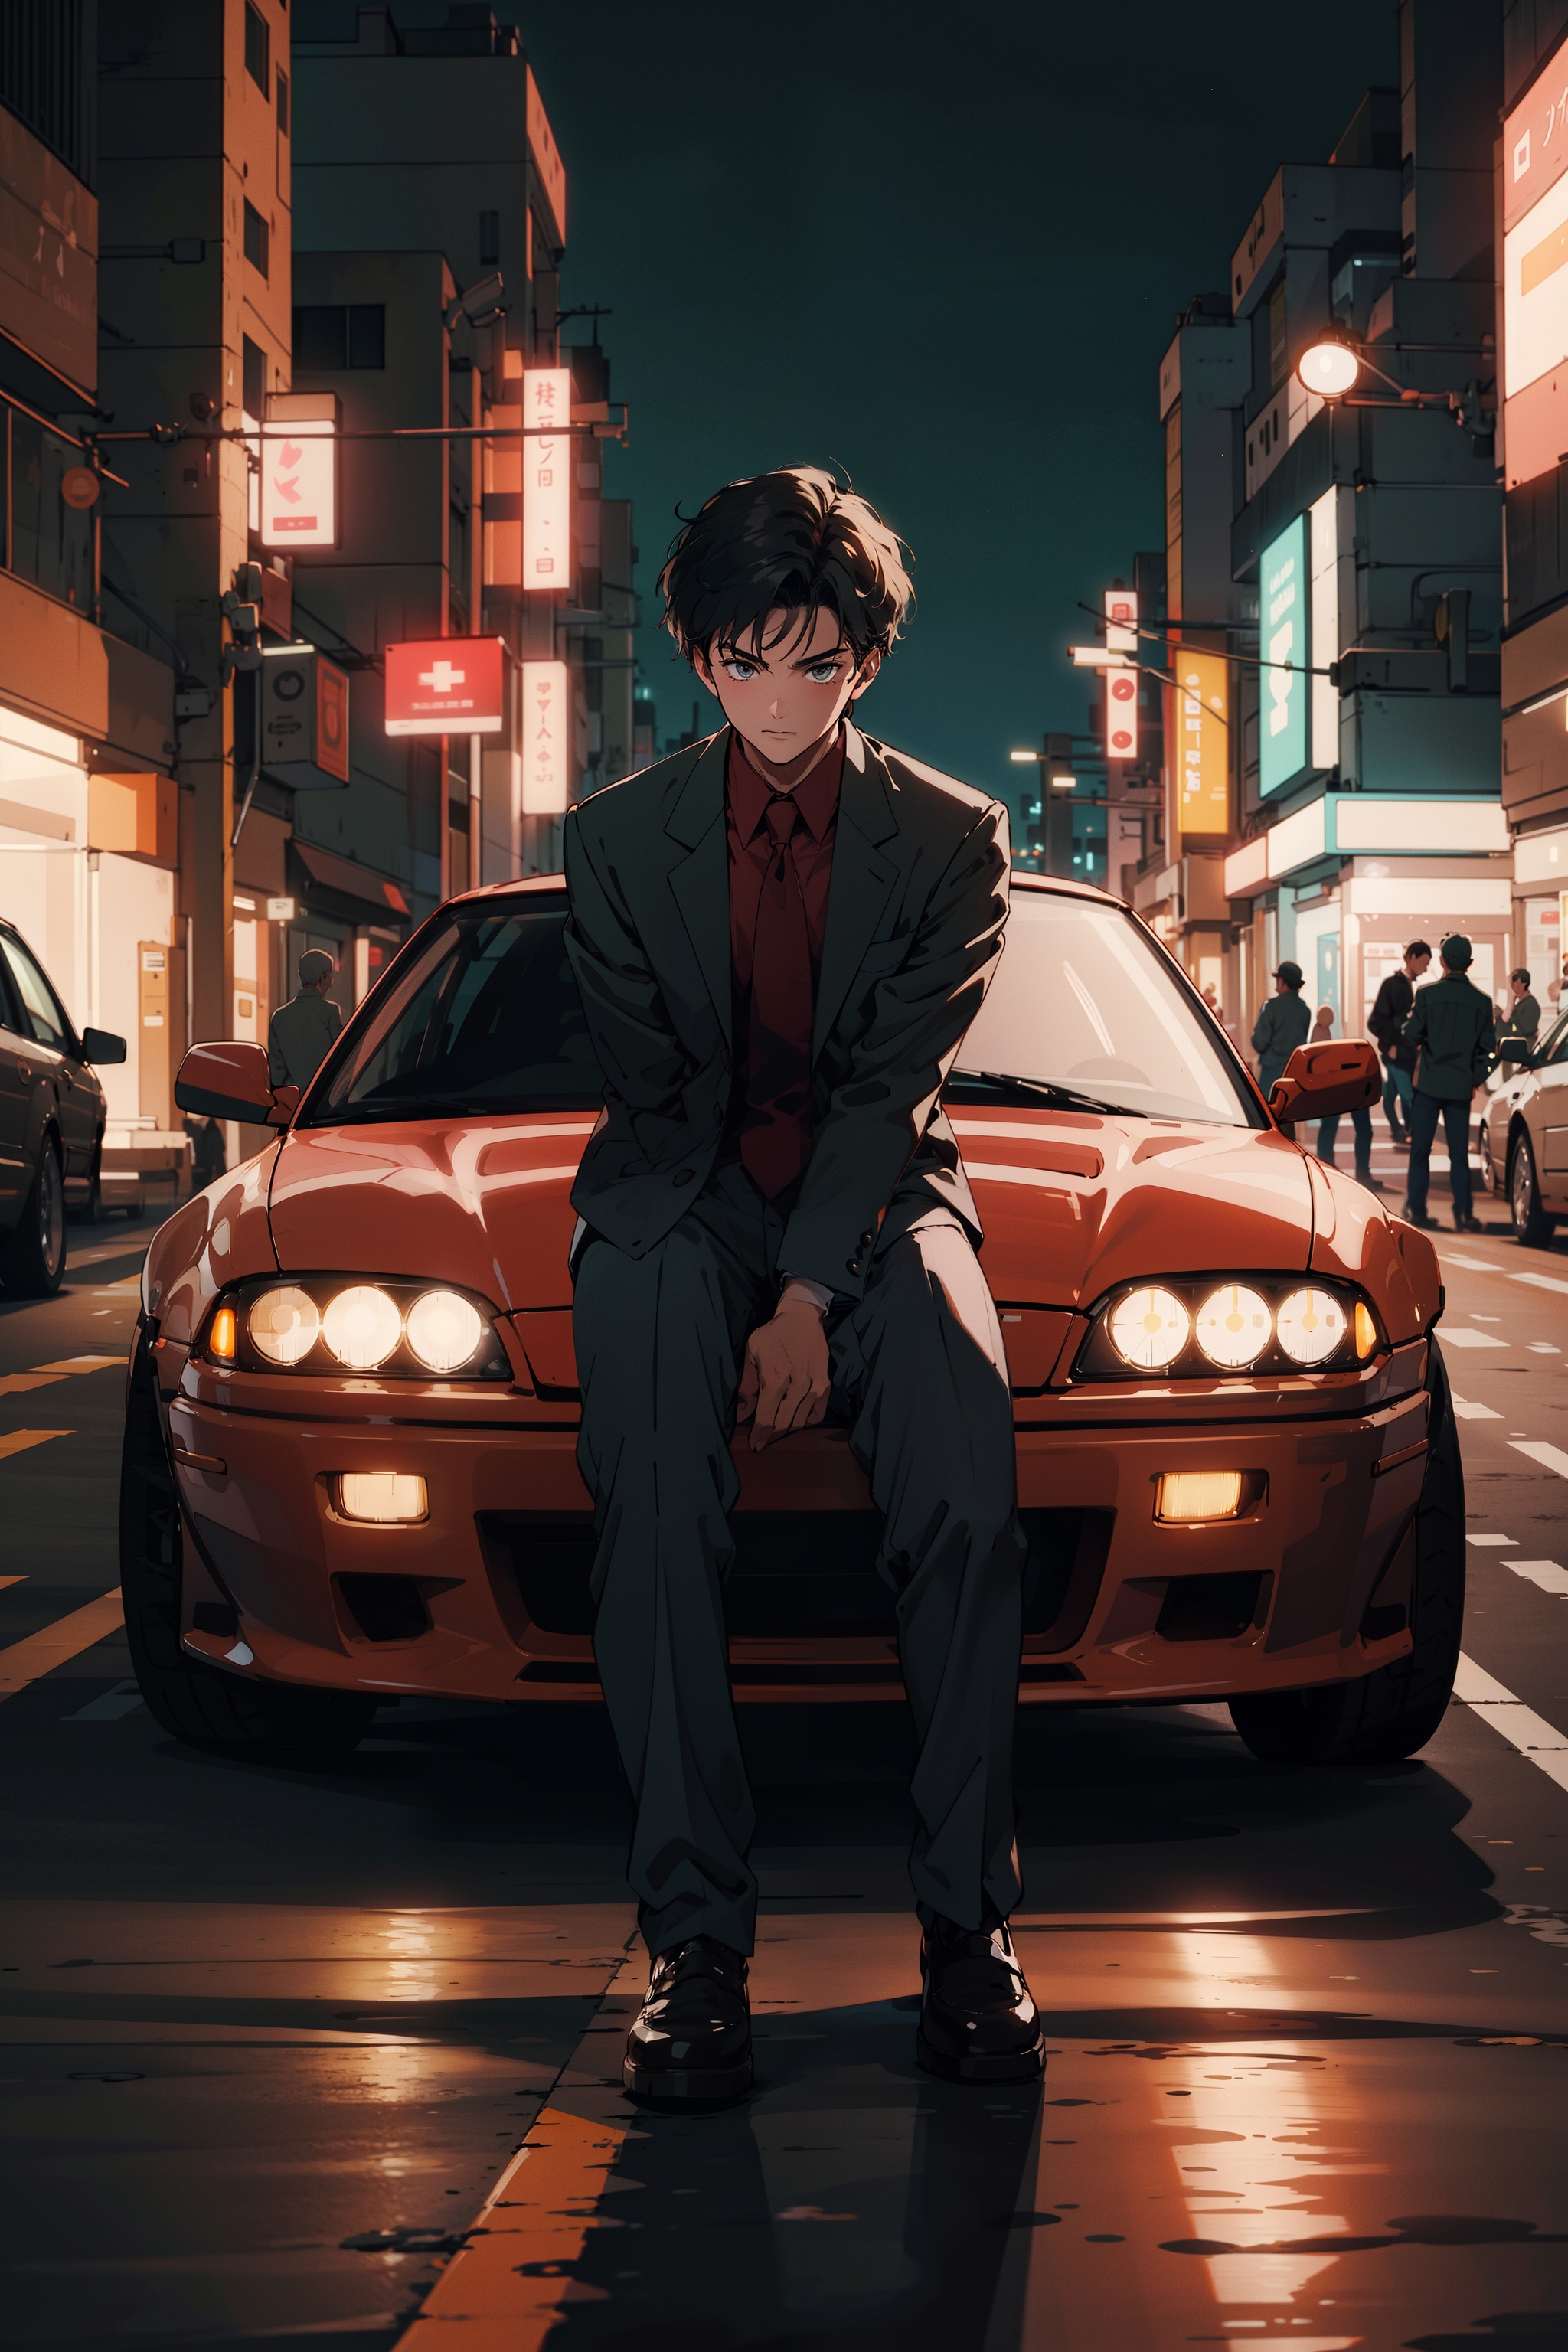 Anime Car Images - Free Download on Freepik